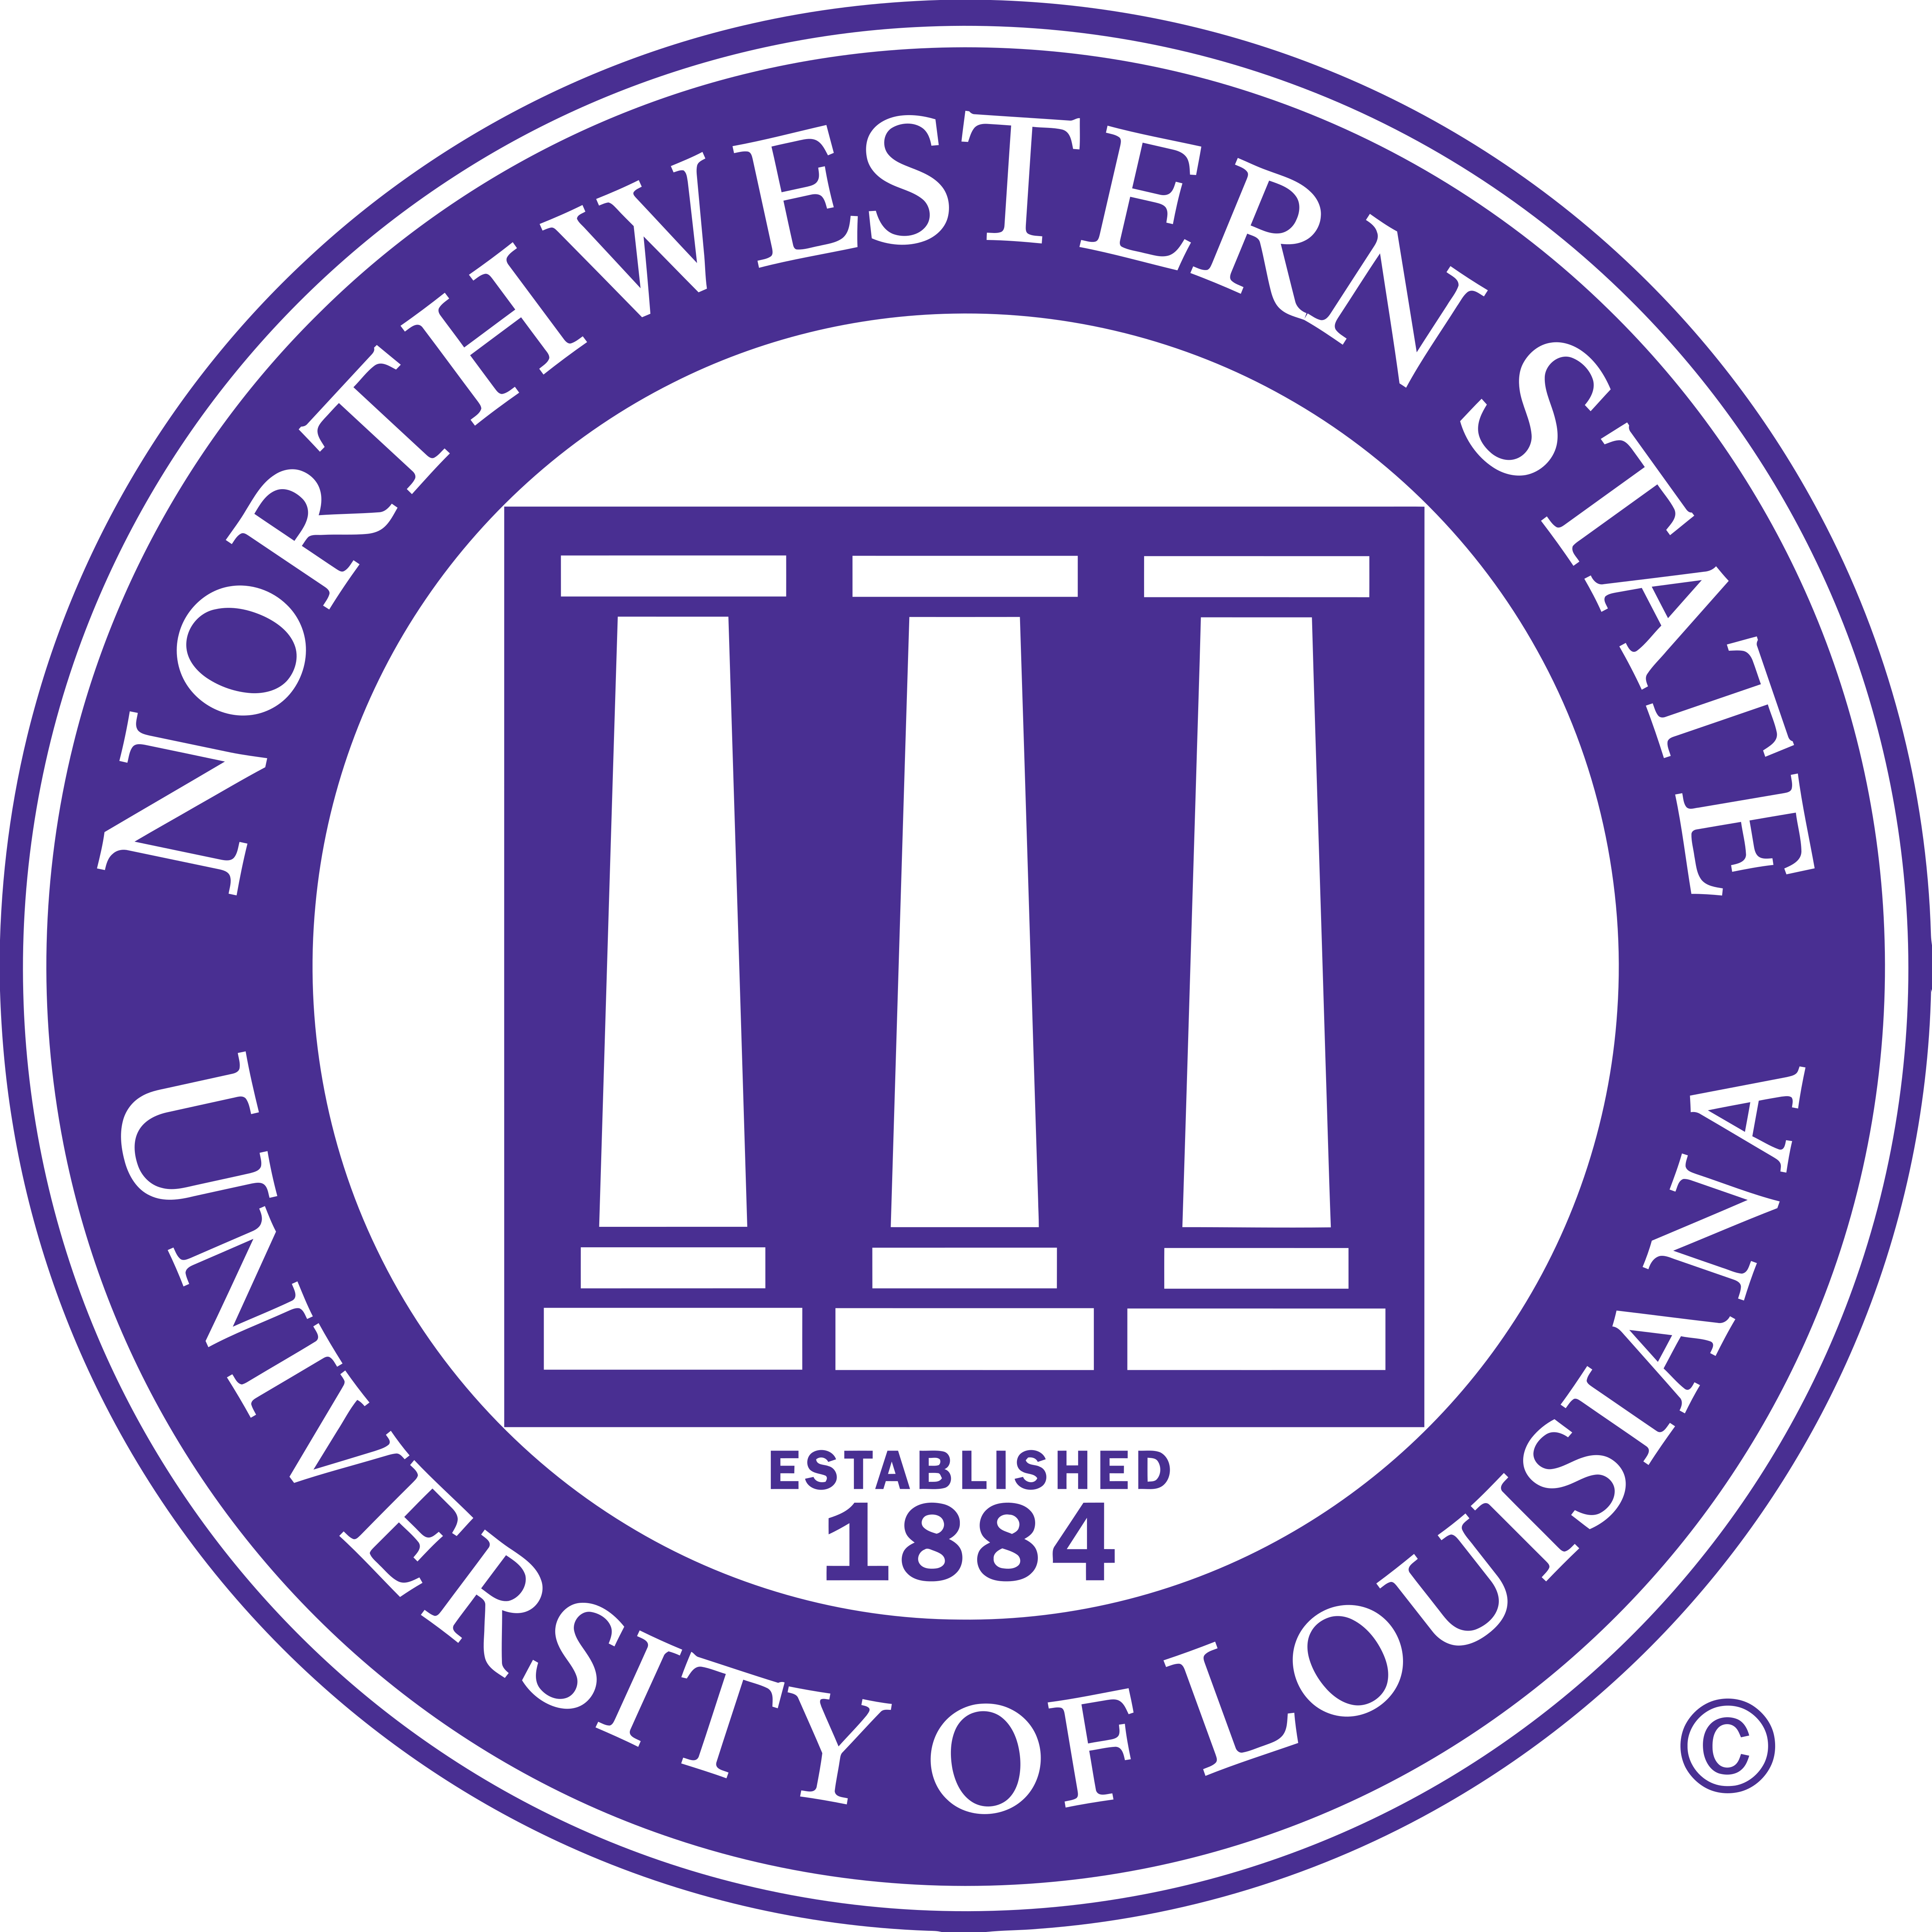 northwestern-state-university-logos-download